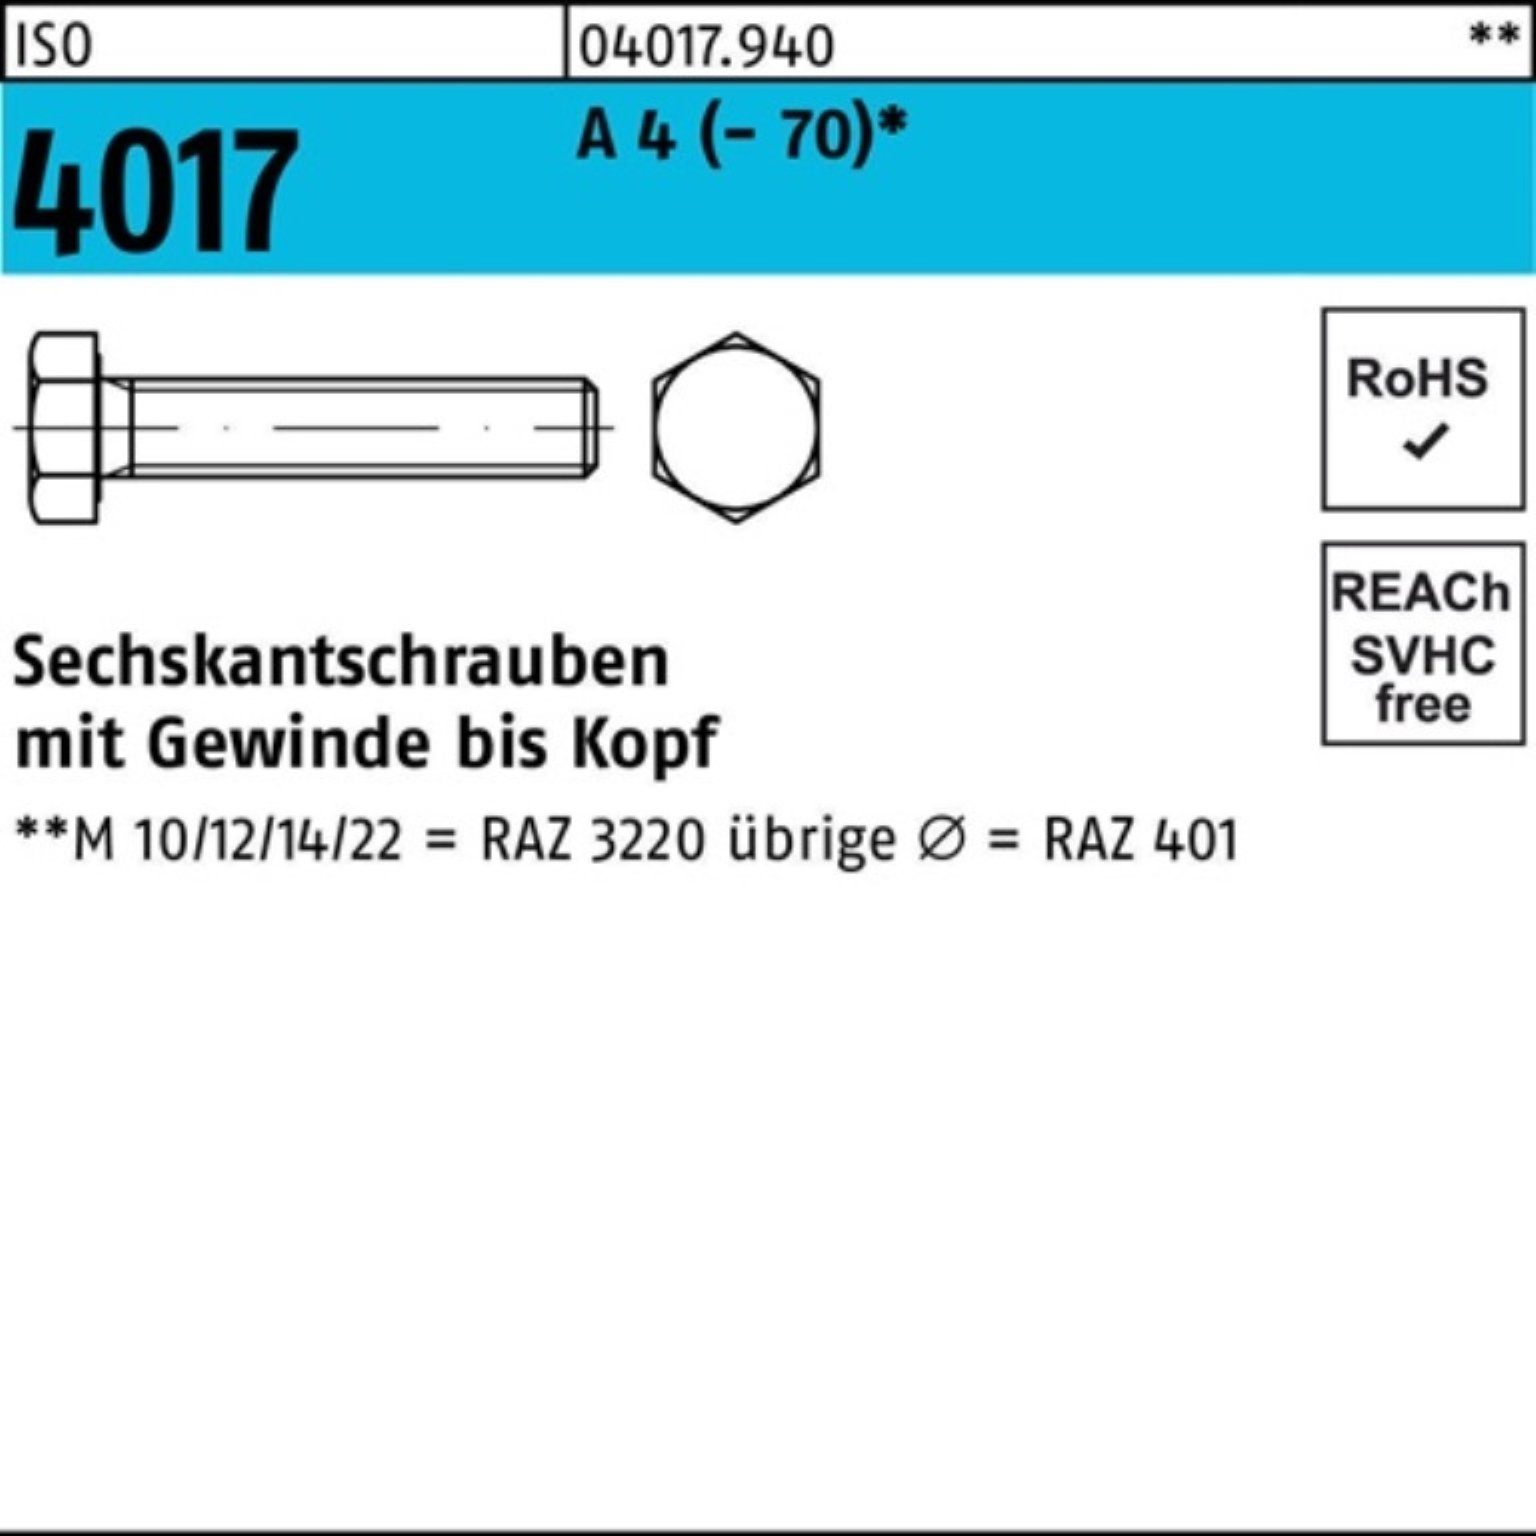 Bufab Sechskantschraube 100er Pack Sechskantschraube ISO 4017 VG M12x 45 A 4 (70) 100 Stück